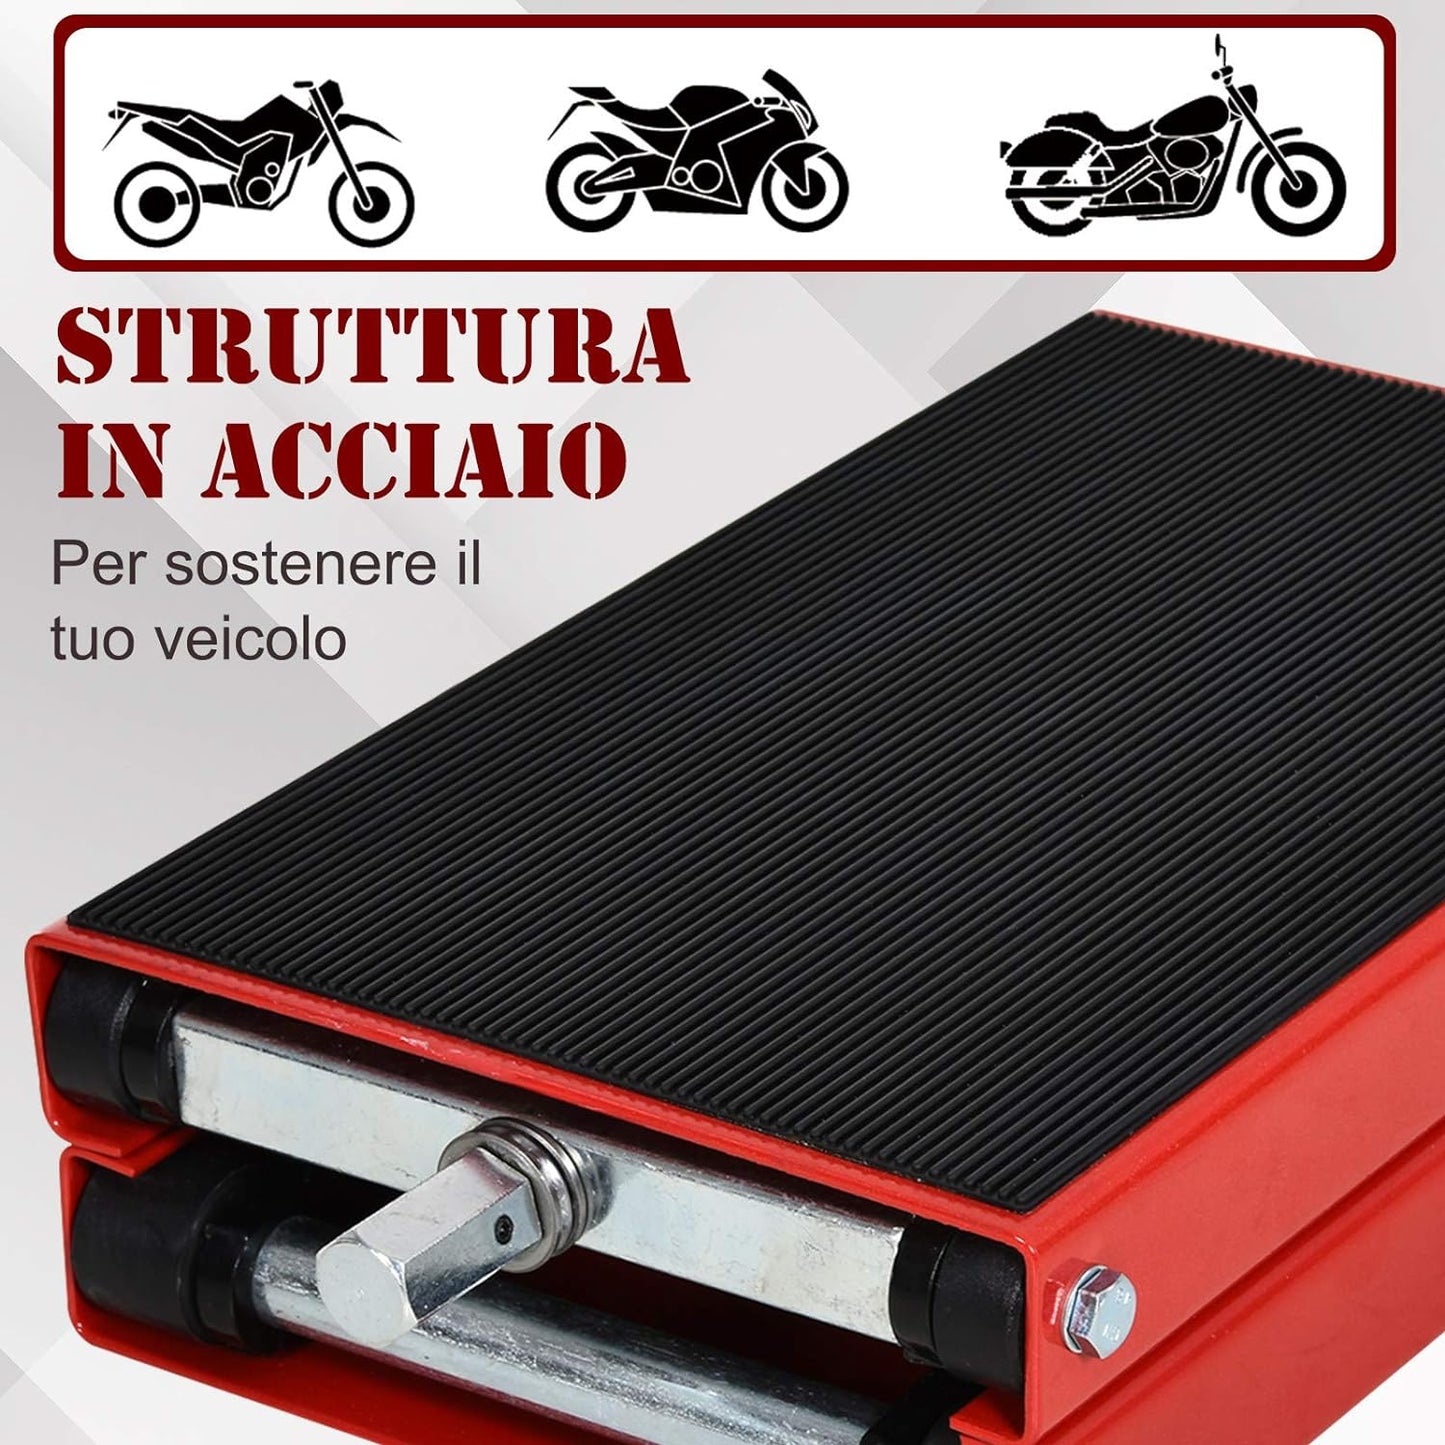 Cavalletto Alzamoto, Sollevatore per Moto scooter in Acciaio Rosso e Nero, Pieghevole e Antiscivolo 41.5 x 23.5 x 10-37cm 4D3C30-012S22